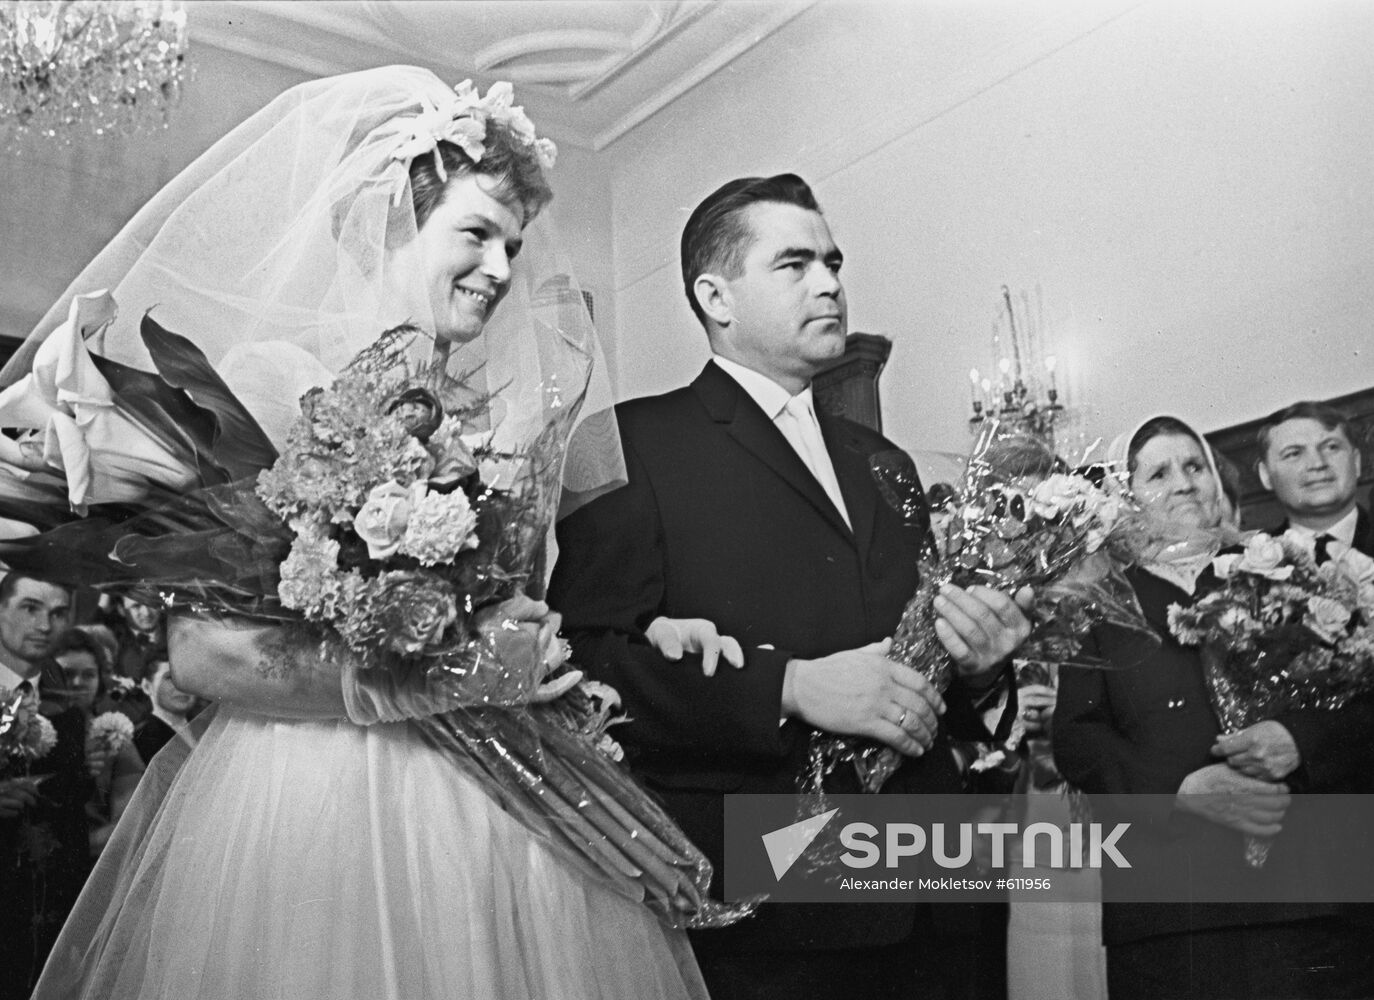 Valentina Tereshkova and Andrian Nikolaev